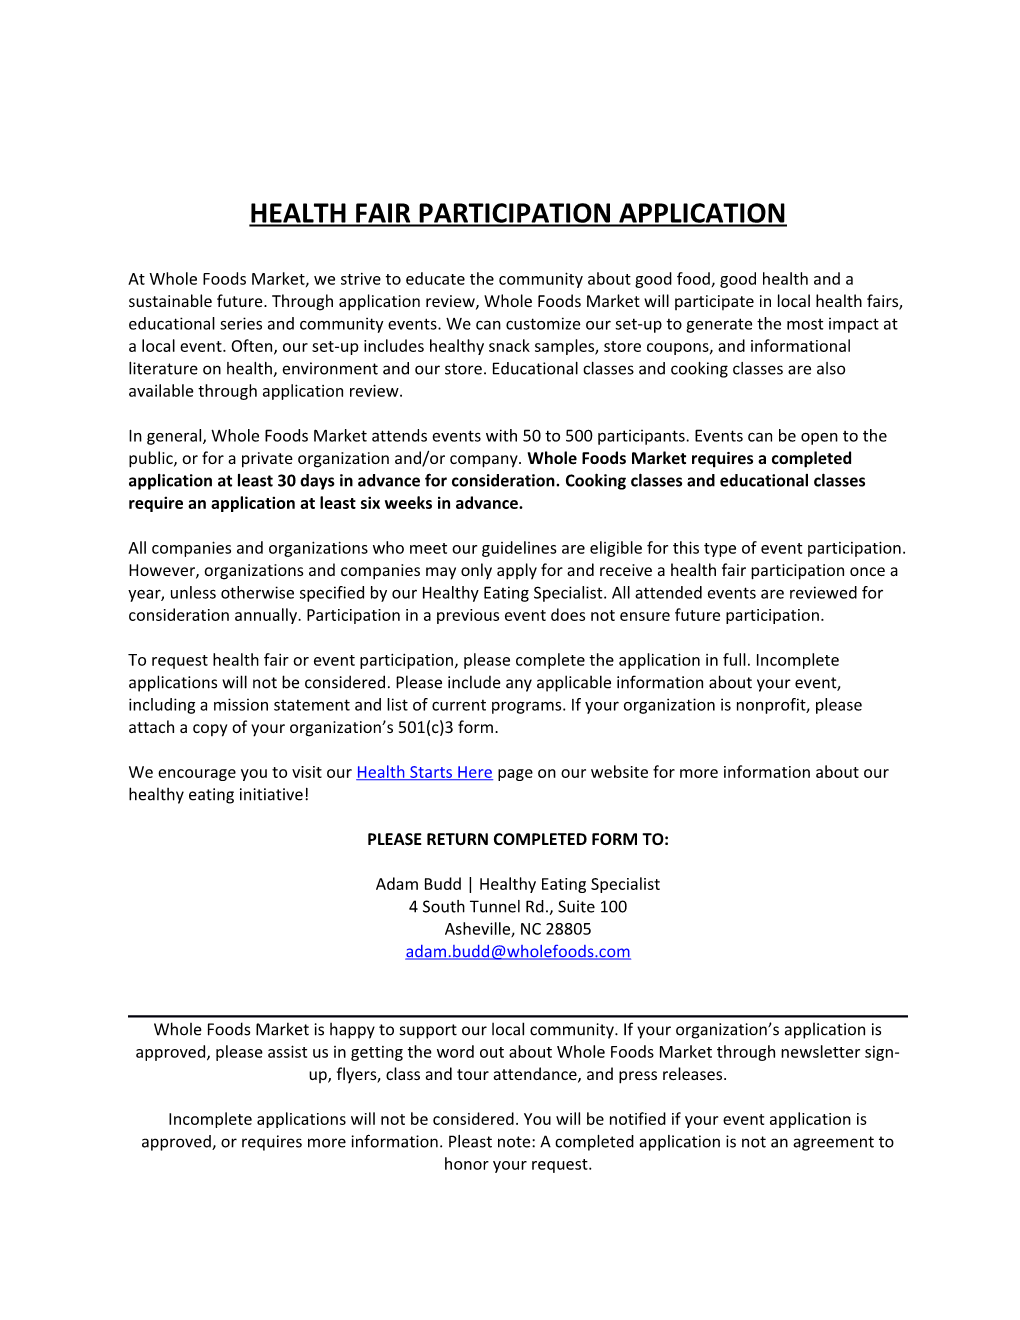 Health Fair Participation Application